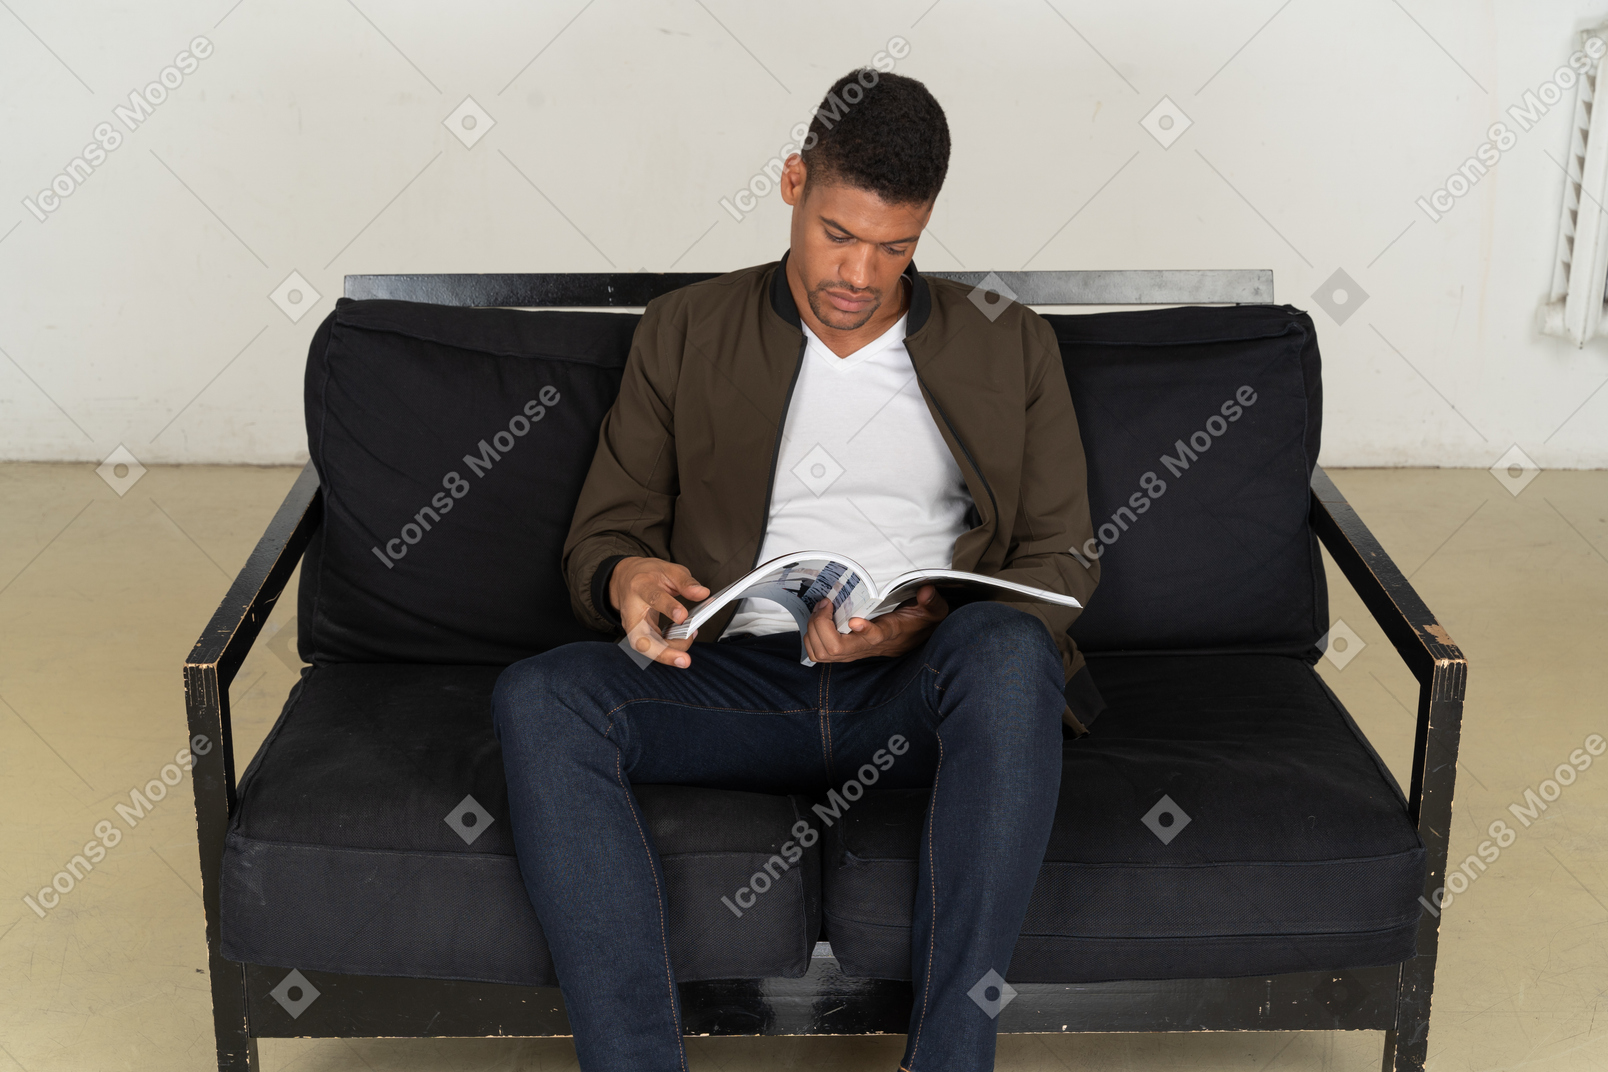 Hermoso joven sentado en un sofá y sosteniendo una revista